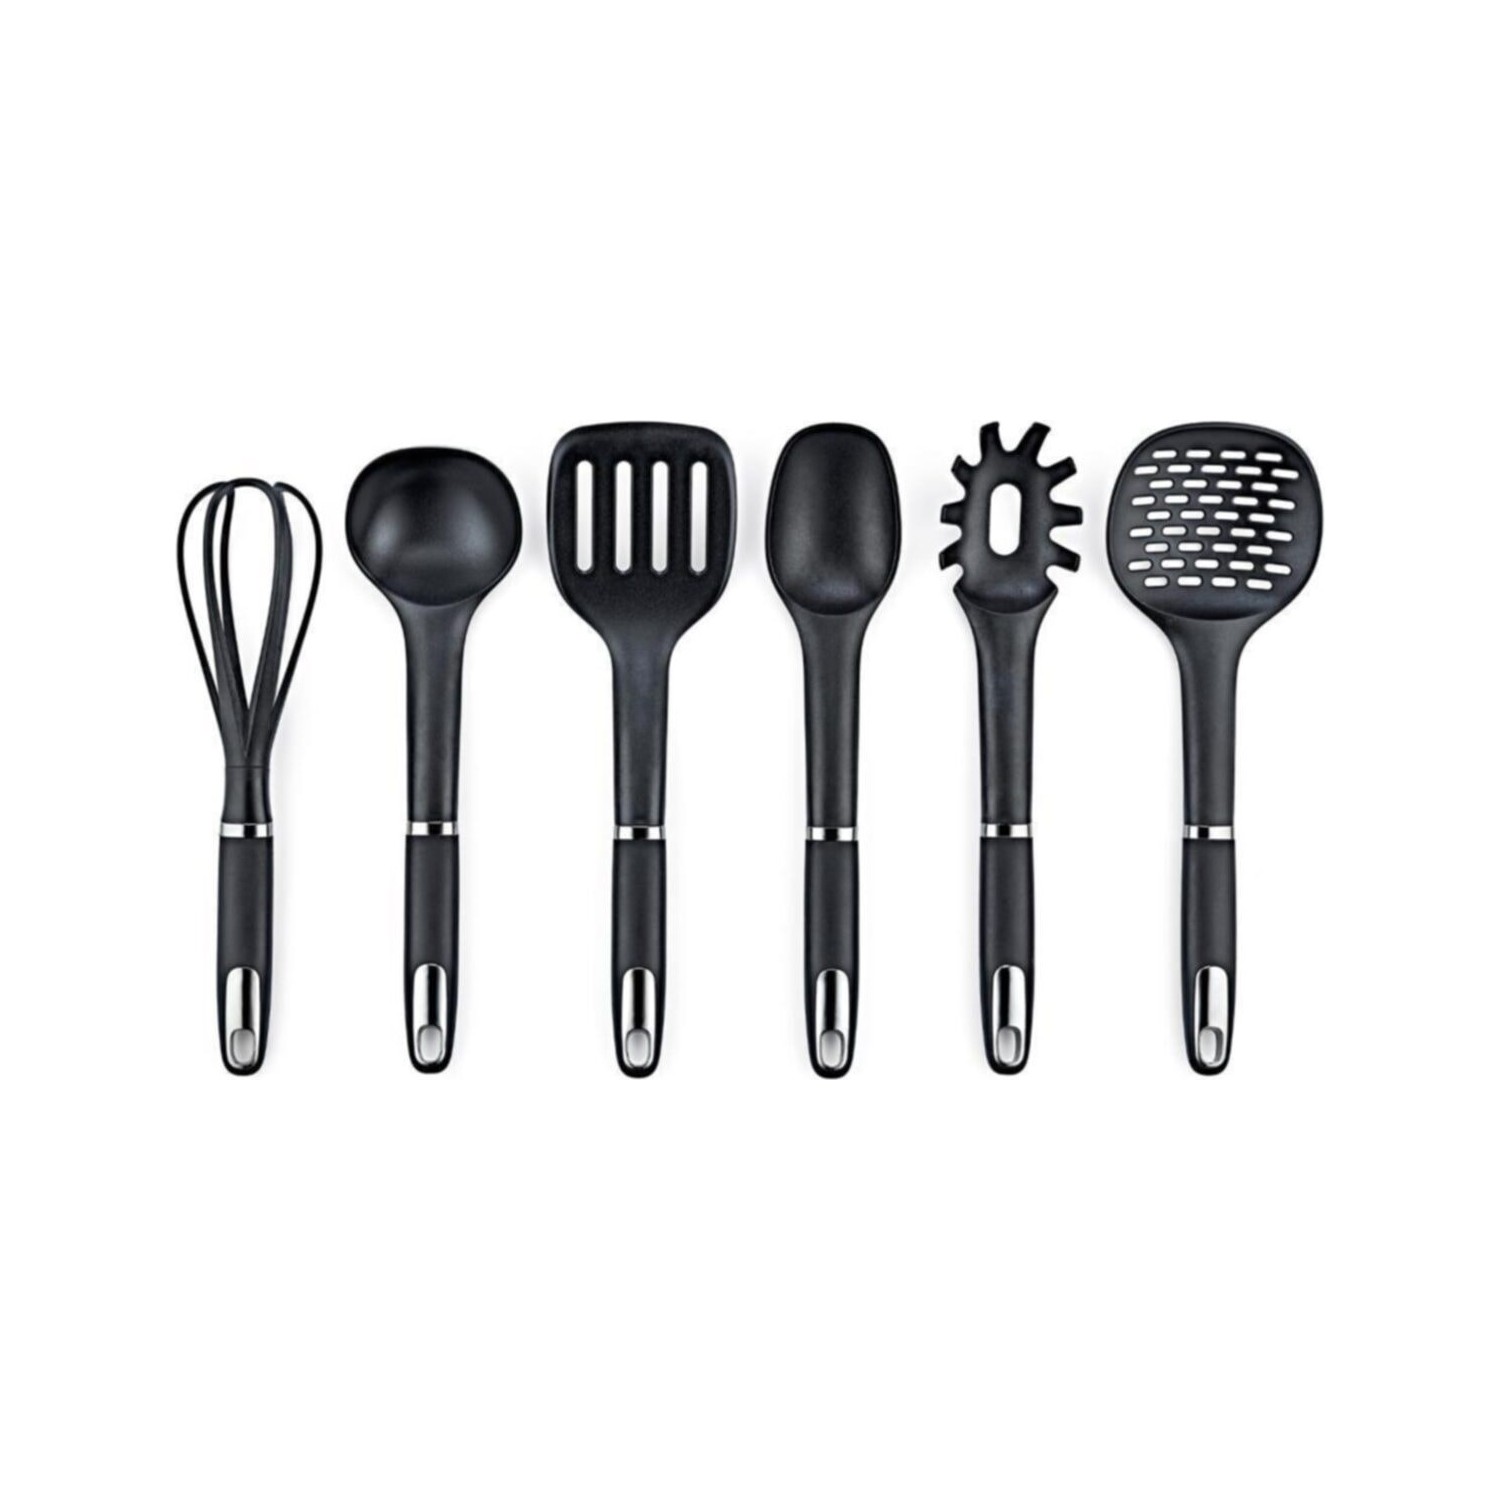 Набор кухонных принадлежностей Vipahmet из 6 предметов, черный набор кухонных принадлежностей arthur price 6 предметов